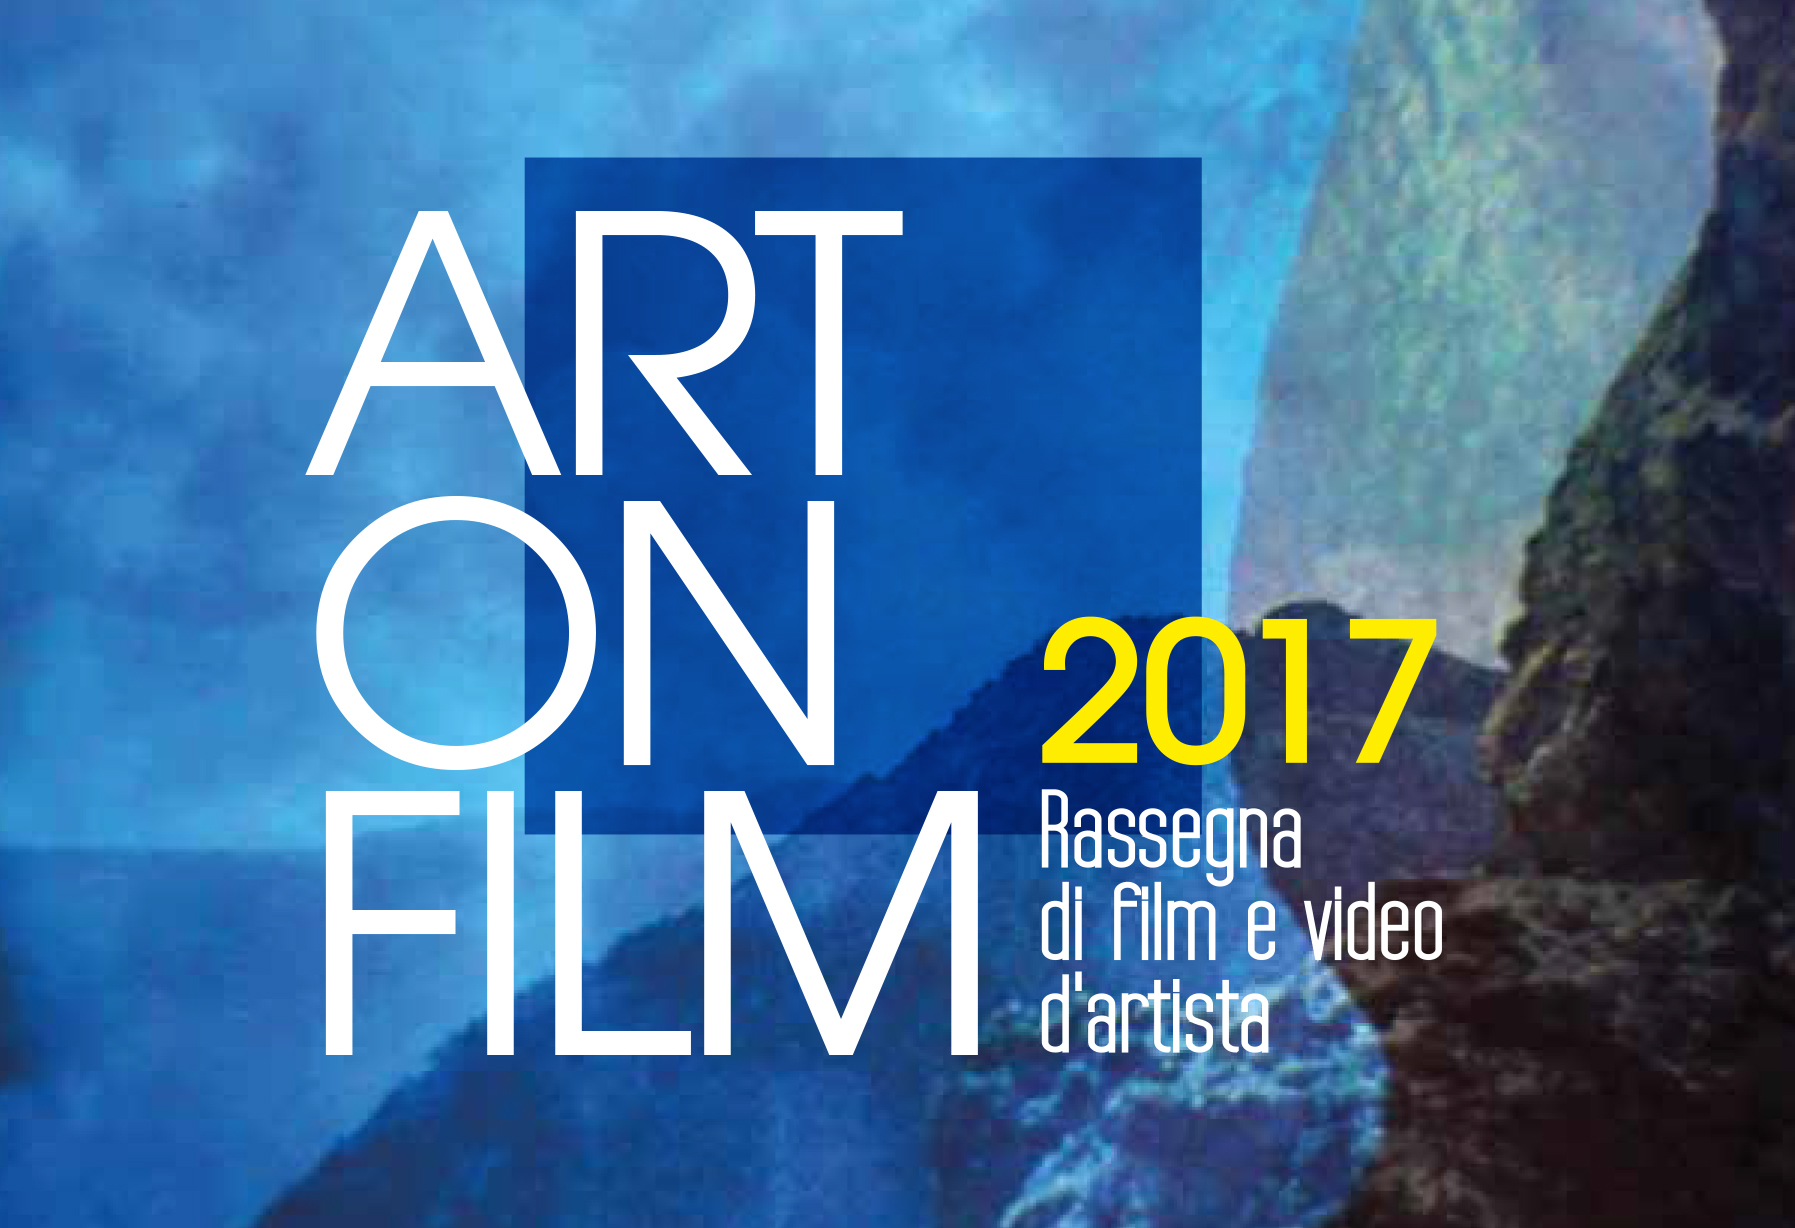 ART ON FILM 2017